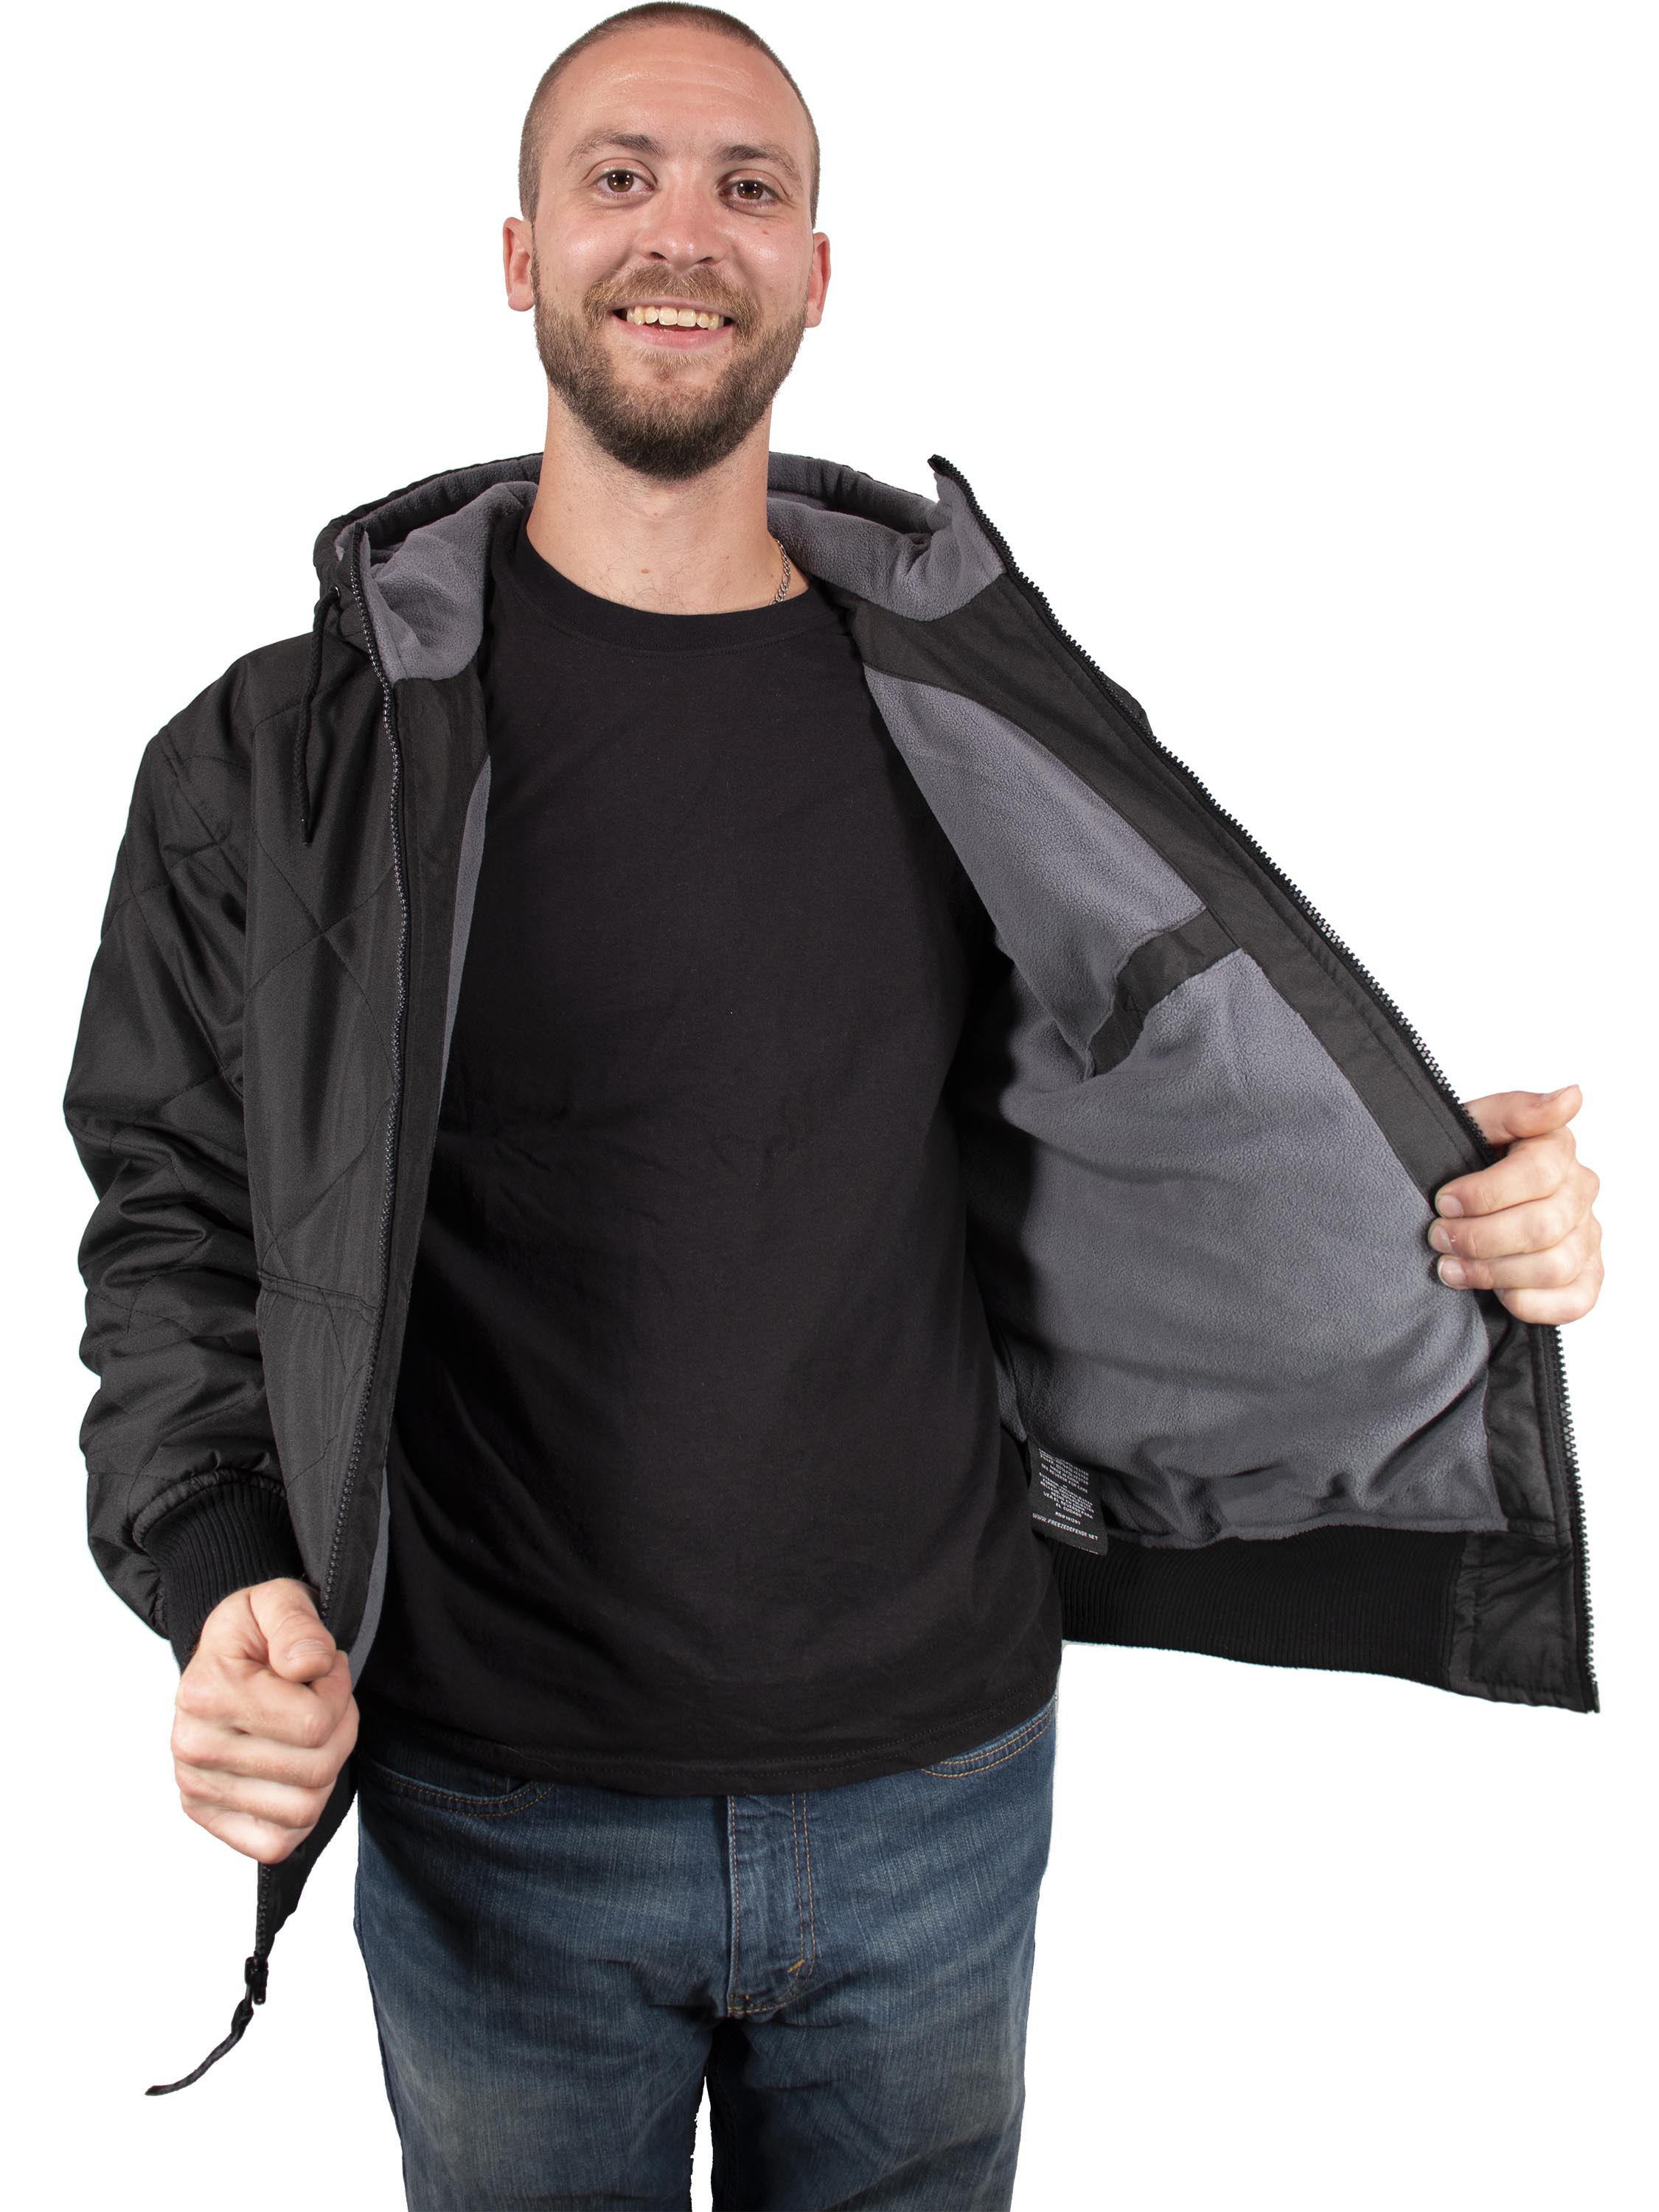 https://www.freezedefense.net/images/freeze-defense-mens-quilted-jacket/freeze-defense-mens-quilted-fleece-winter-jacket-inside-pocket-black.jpg